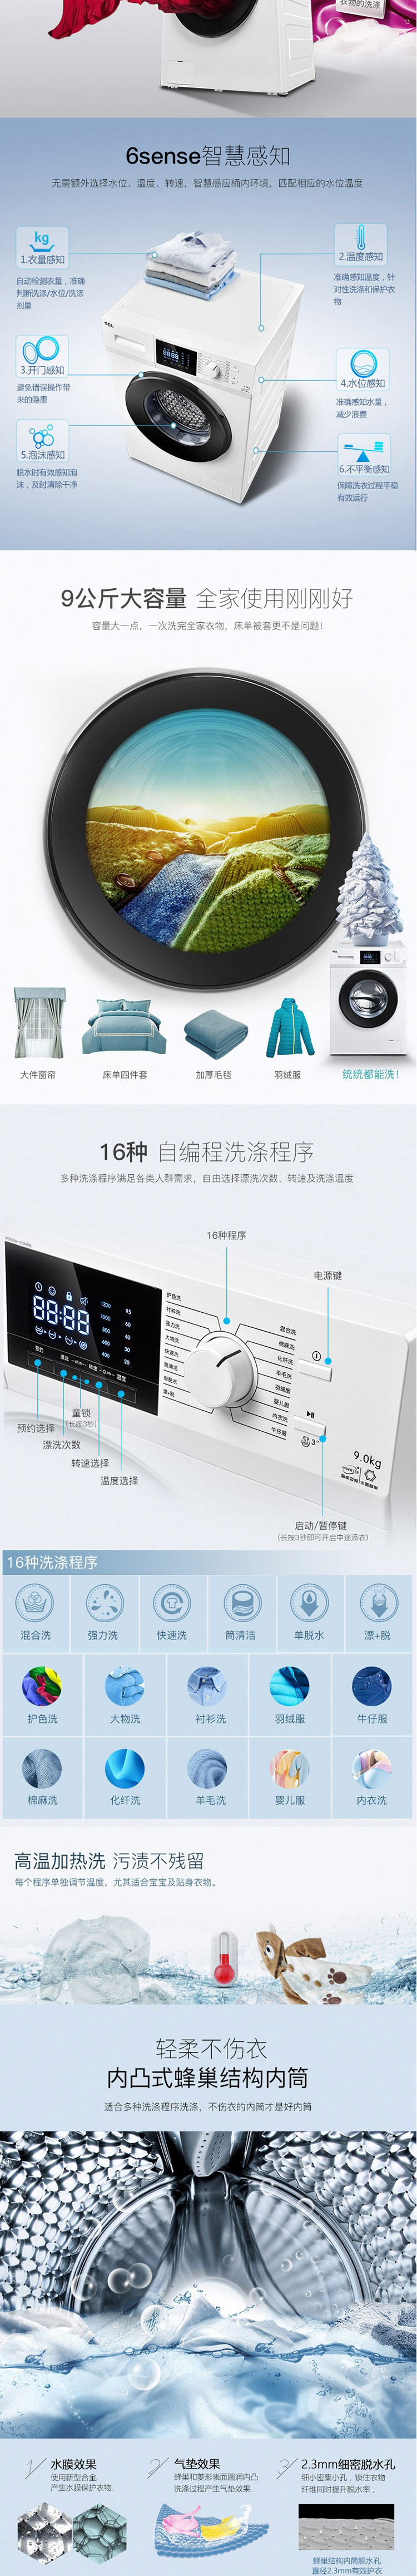 TCL XQG90-12303B芭蕾白 洗衣机 9公斤 家用变频滚筒 超大容量 洗衣机全自动